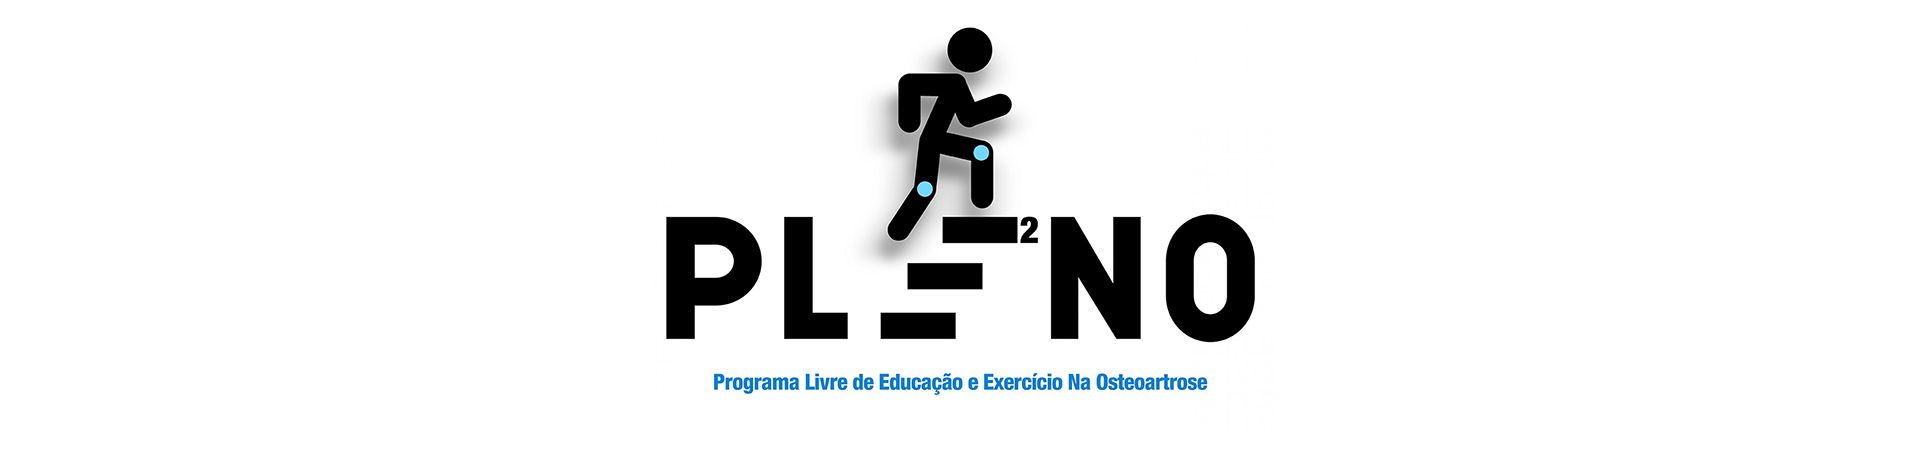 PLE2NO – Programa Livre de Educação e Exercício na Osteoartrose